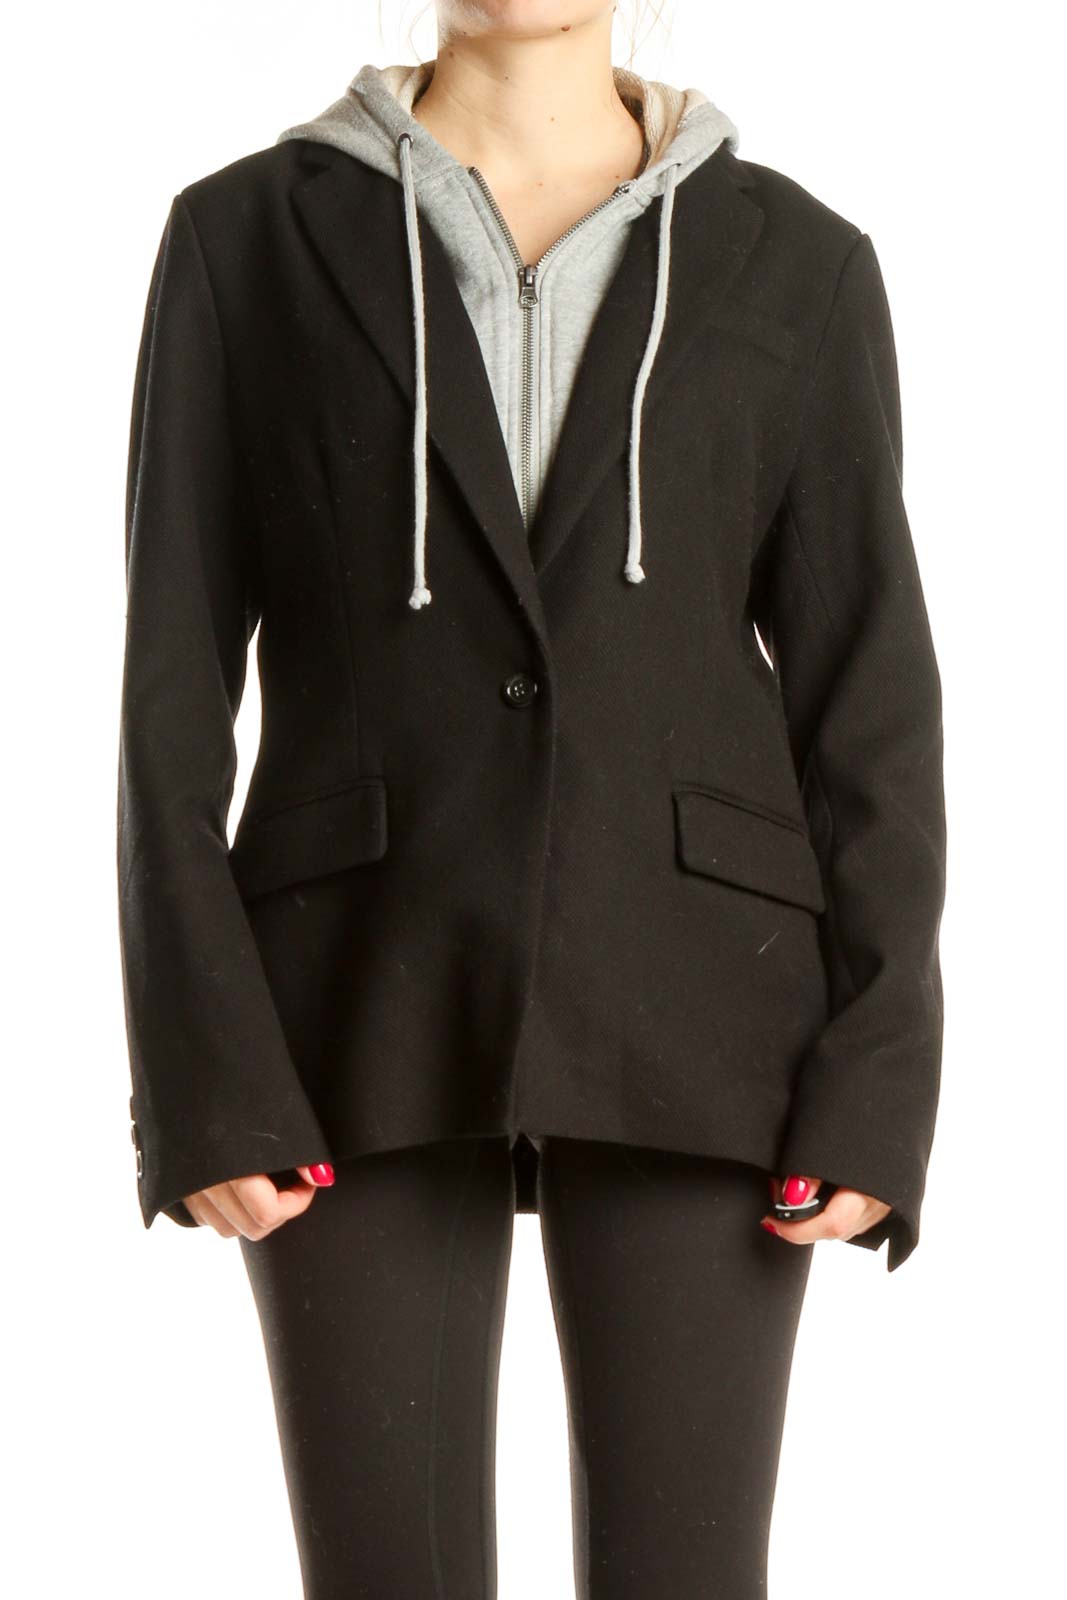 Black Blazer With Sewn In Sweatshirt Detail Front